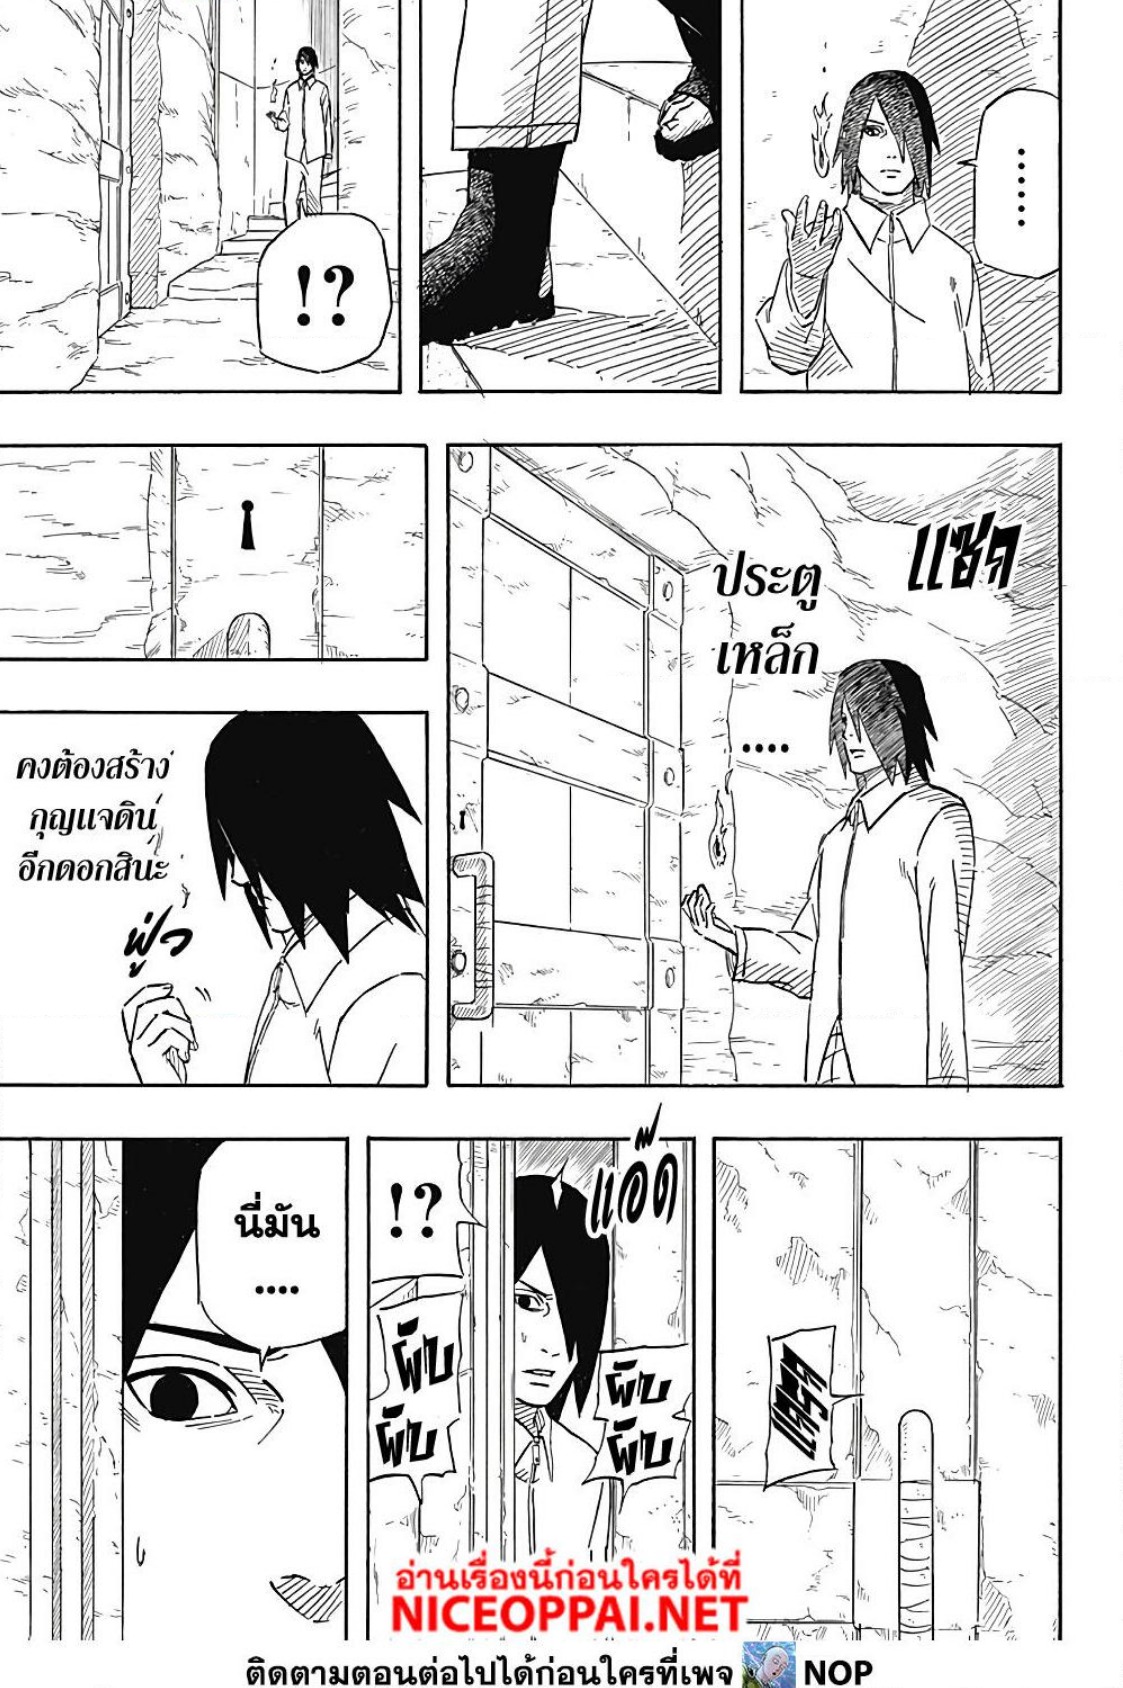 Naruto Sasuke’s Story The Uchiha and the Heavenly Stardust ตอนที่ 5 (9)